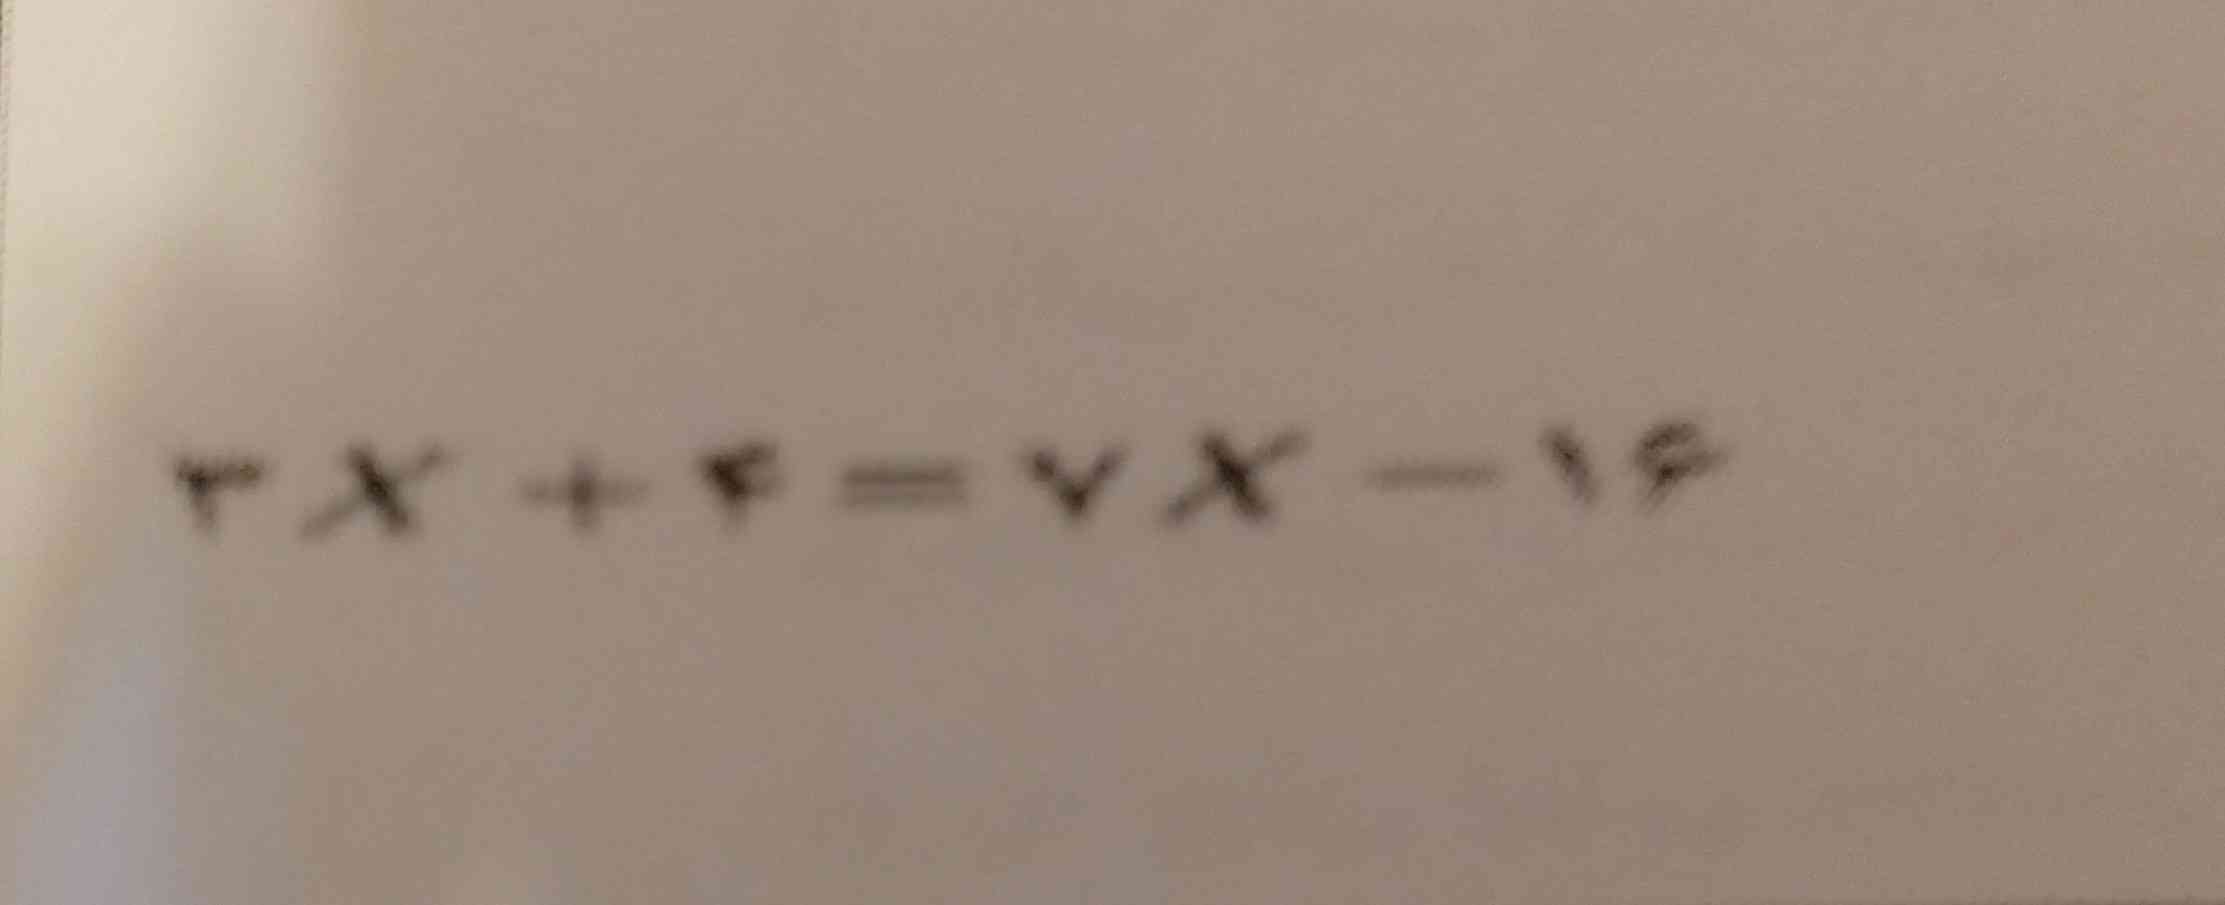 معادله زیر را حل کنید 
تاج میدم